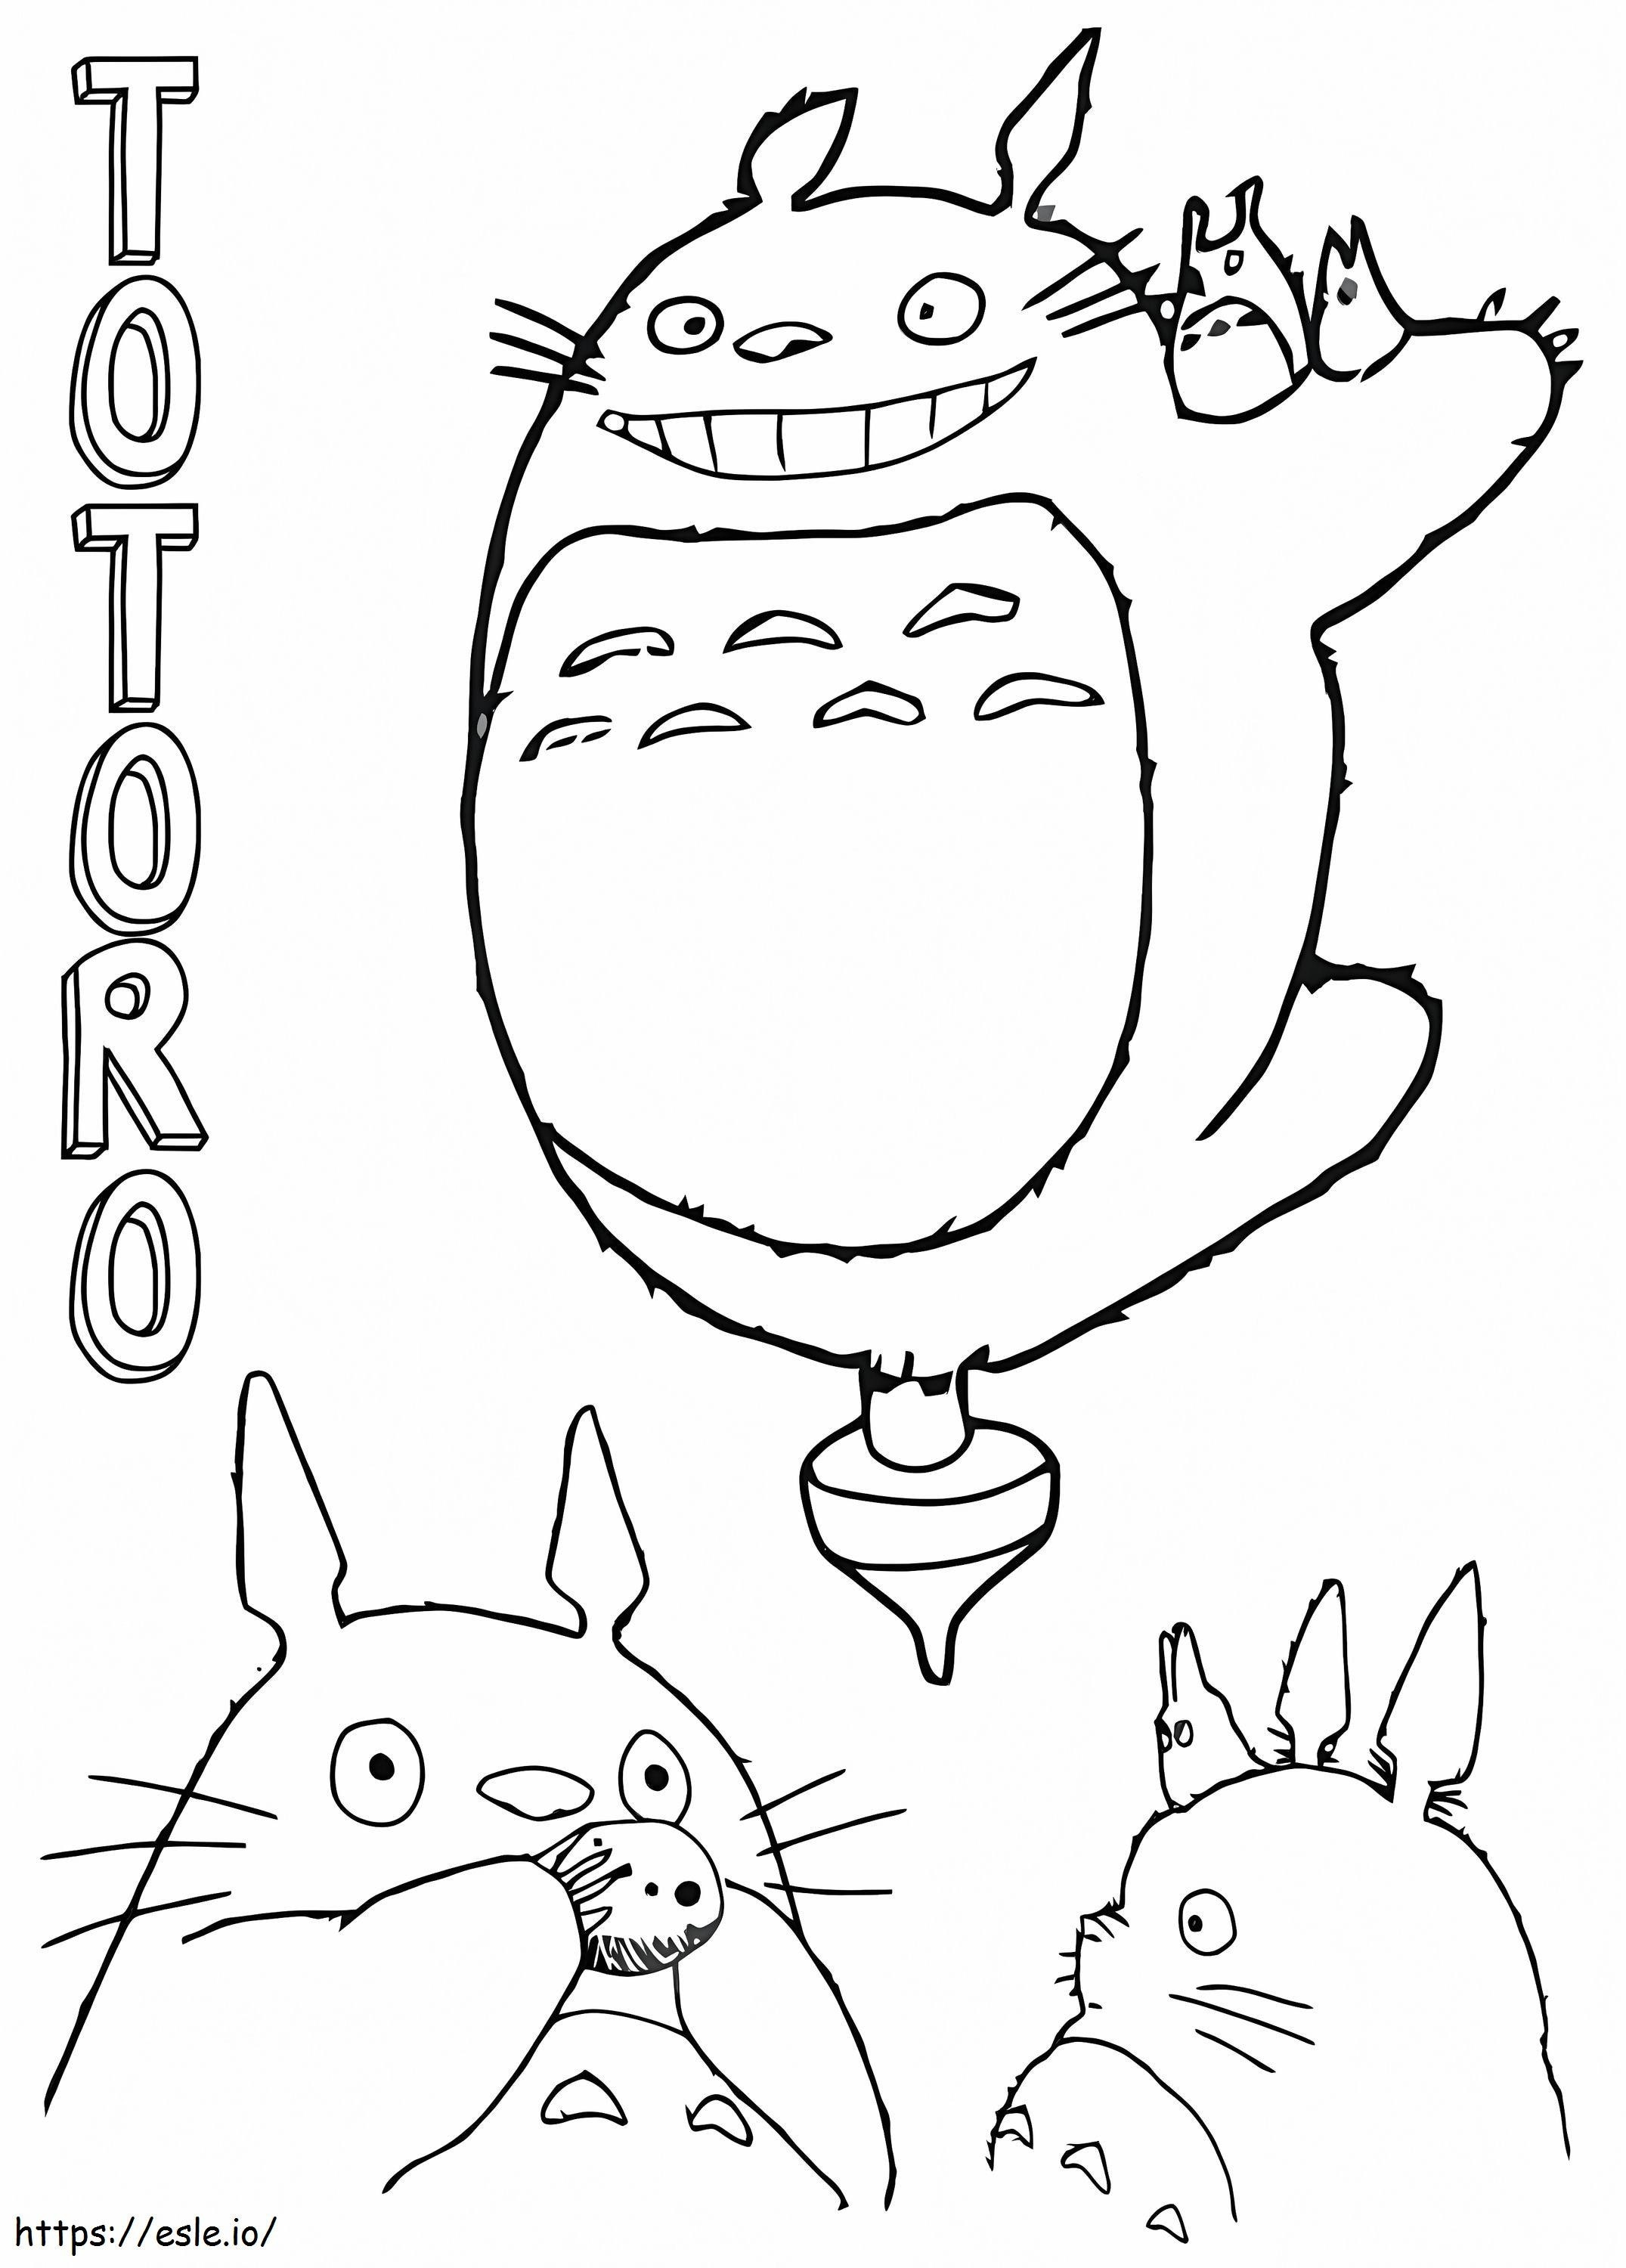 Vriendelijk Totoro-plezier kleurplaat kleurplaat